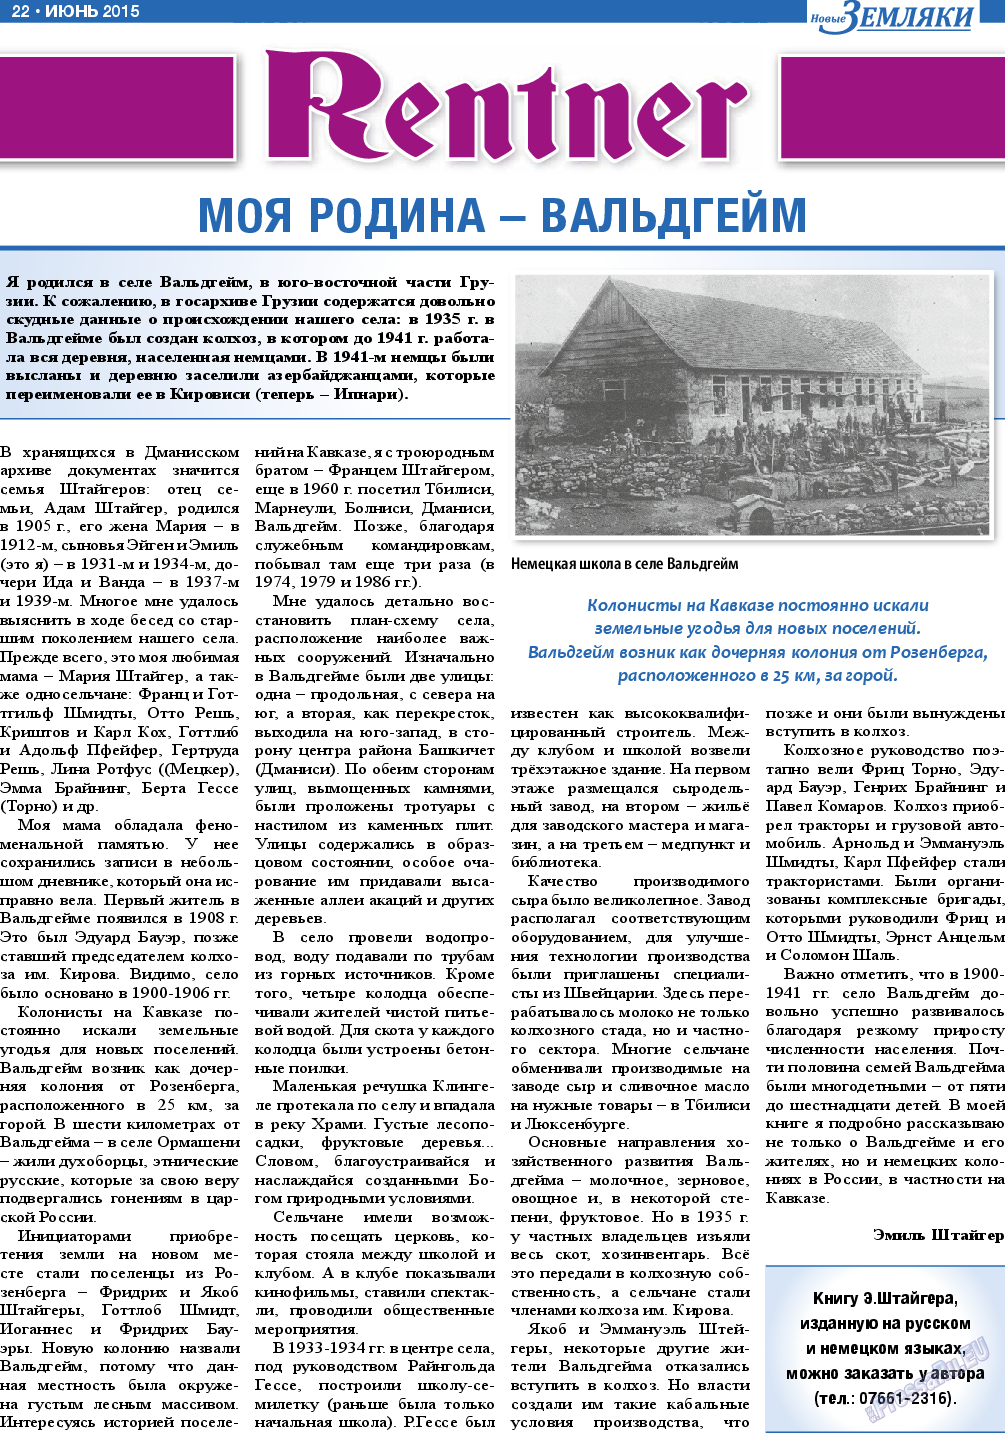 Новые Земляки, газета. 2015 №6 стр.22